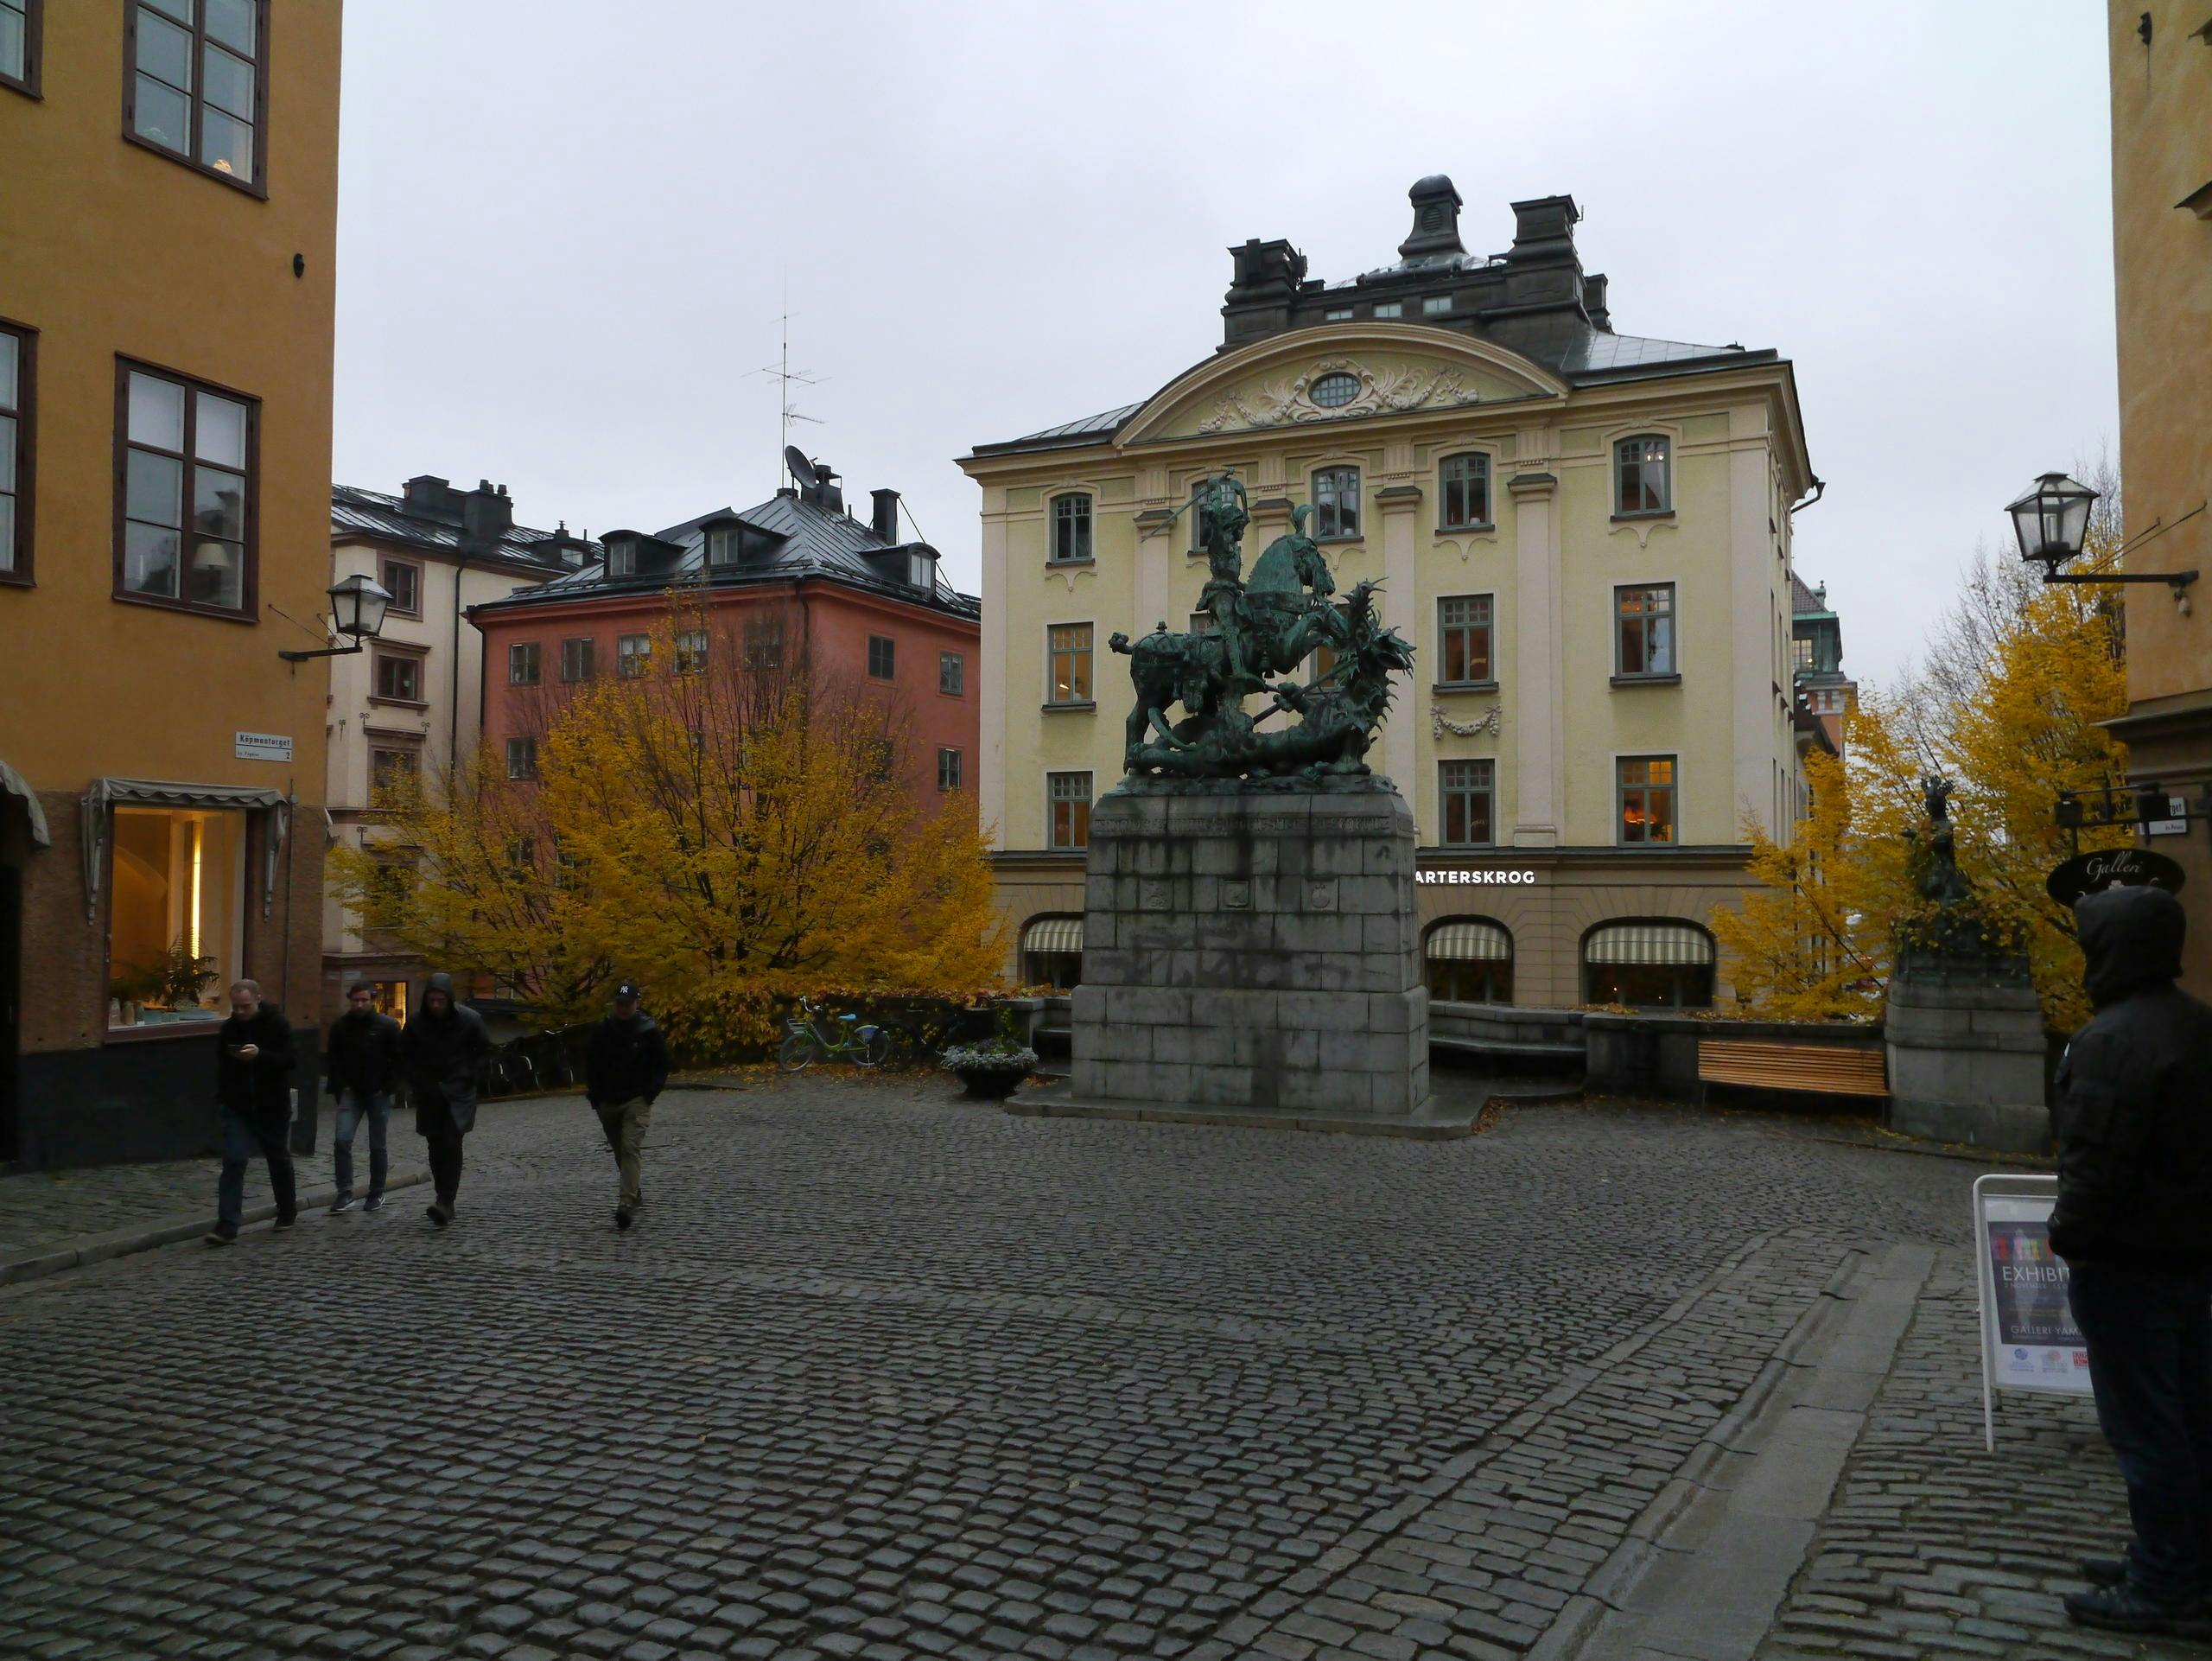 Rundgang durch das mittelalterliche Stockholm durch Gamla Stan